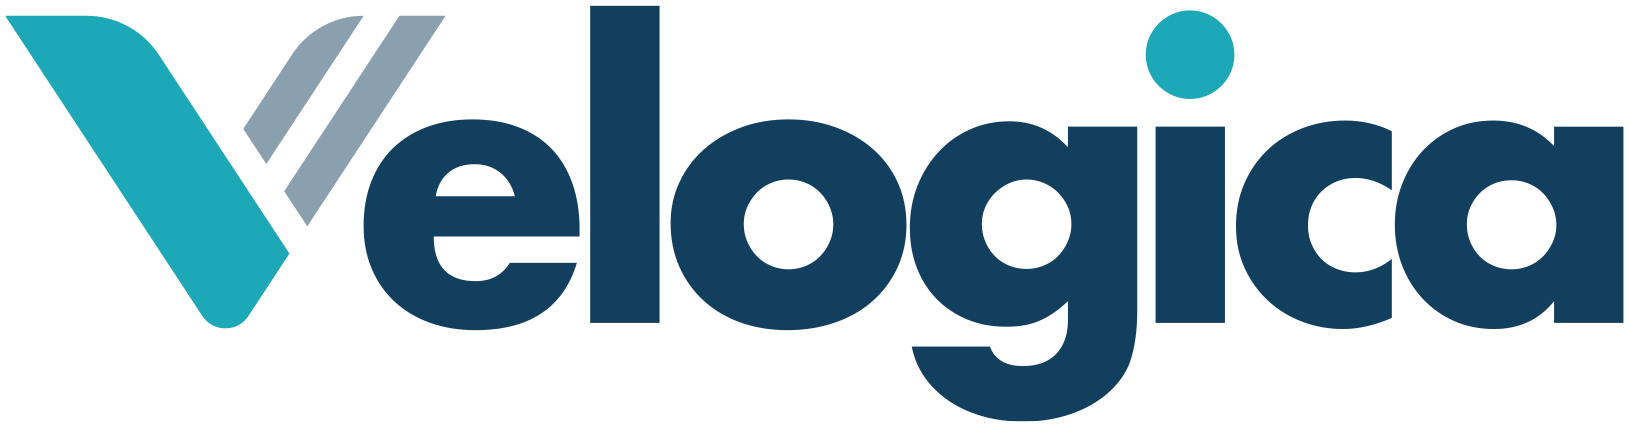 New logo velogica